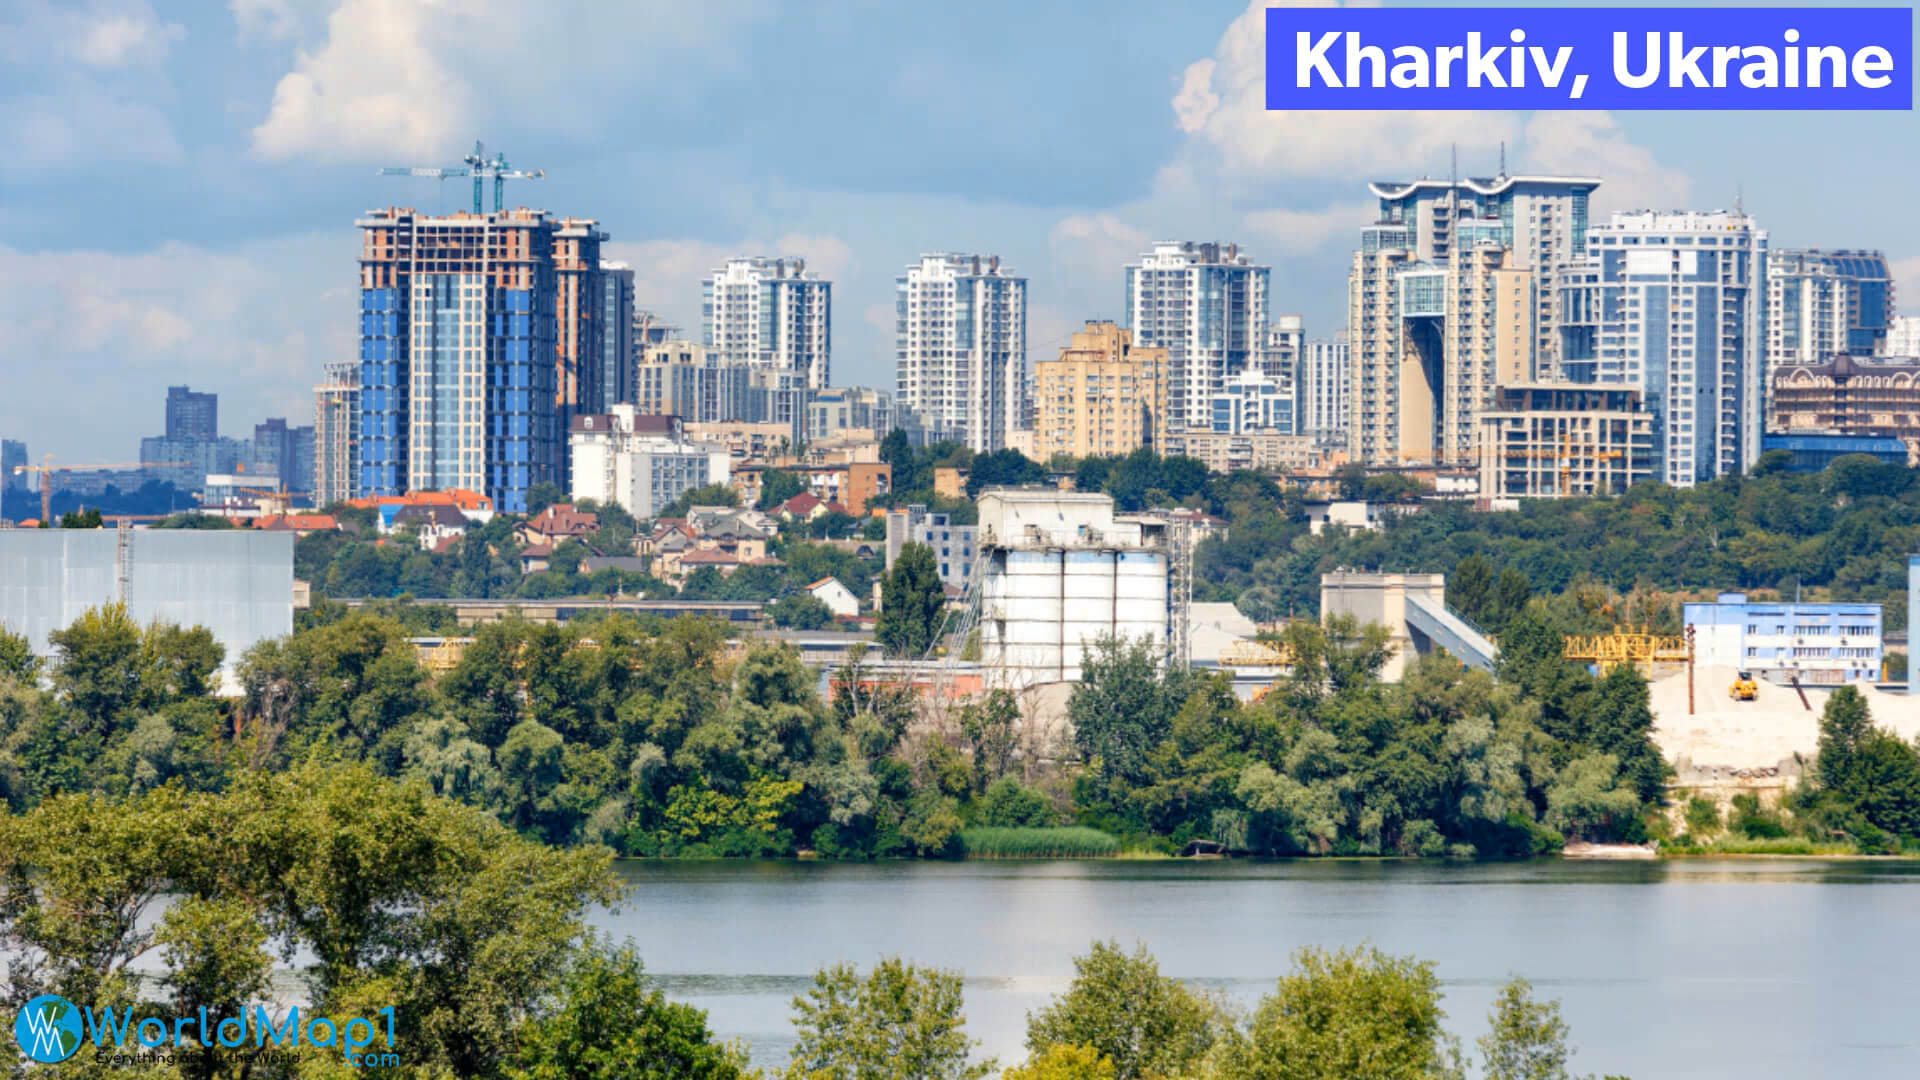 River in Kharkiv Ukraine